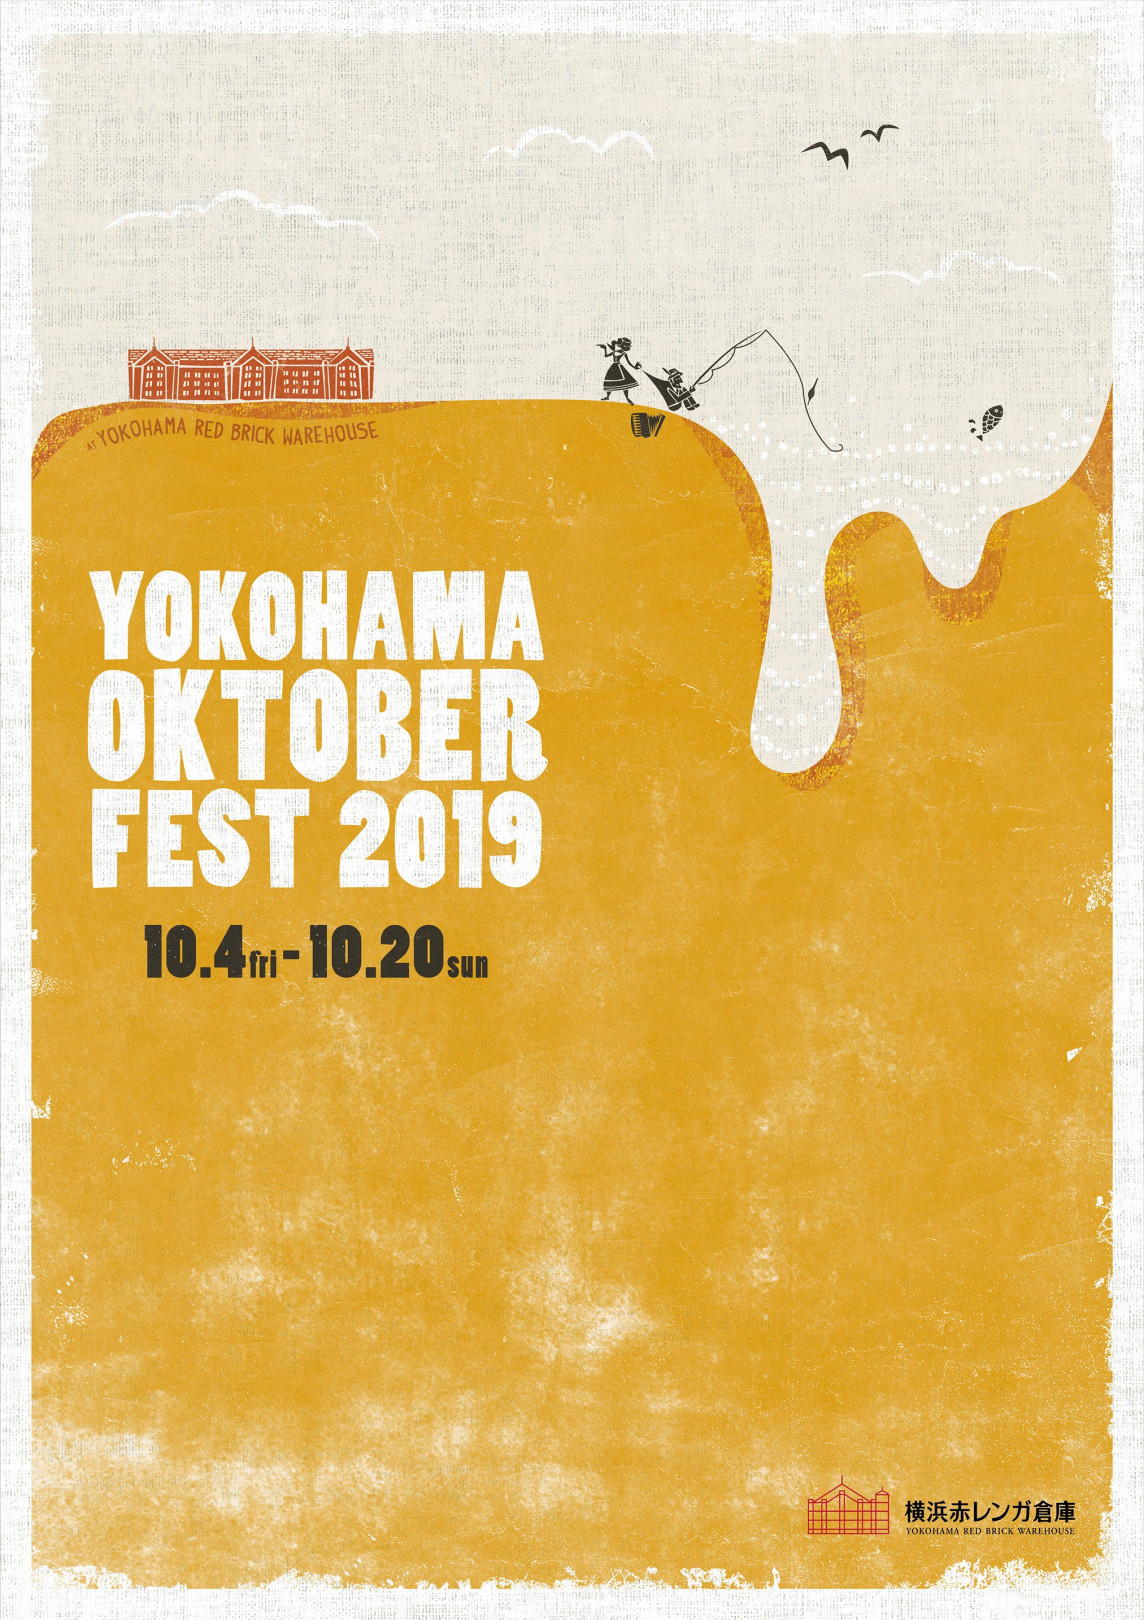 横浜赤レンガ倉庫のオクトーバーフェストが今年も開催! 立ち飲みで楽しめるパブが新登場